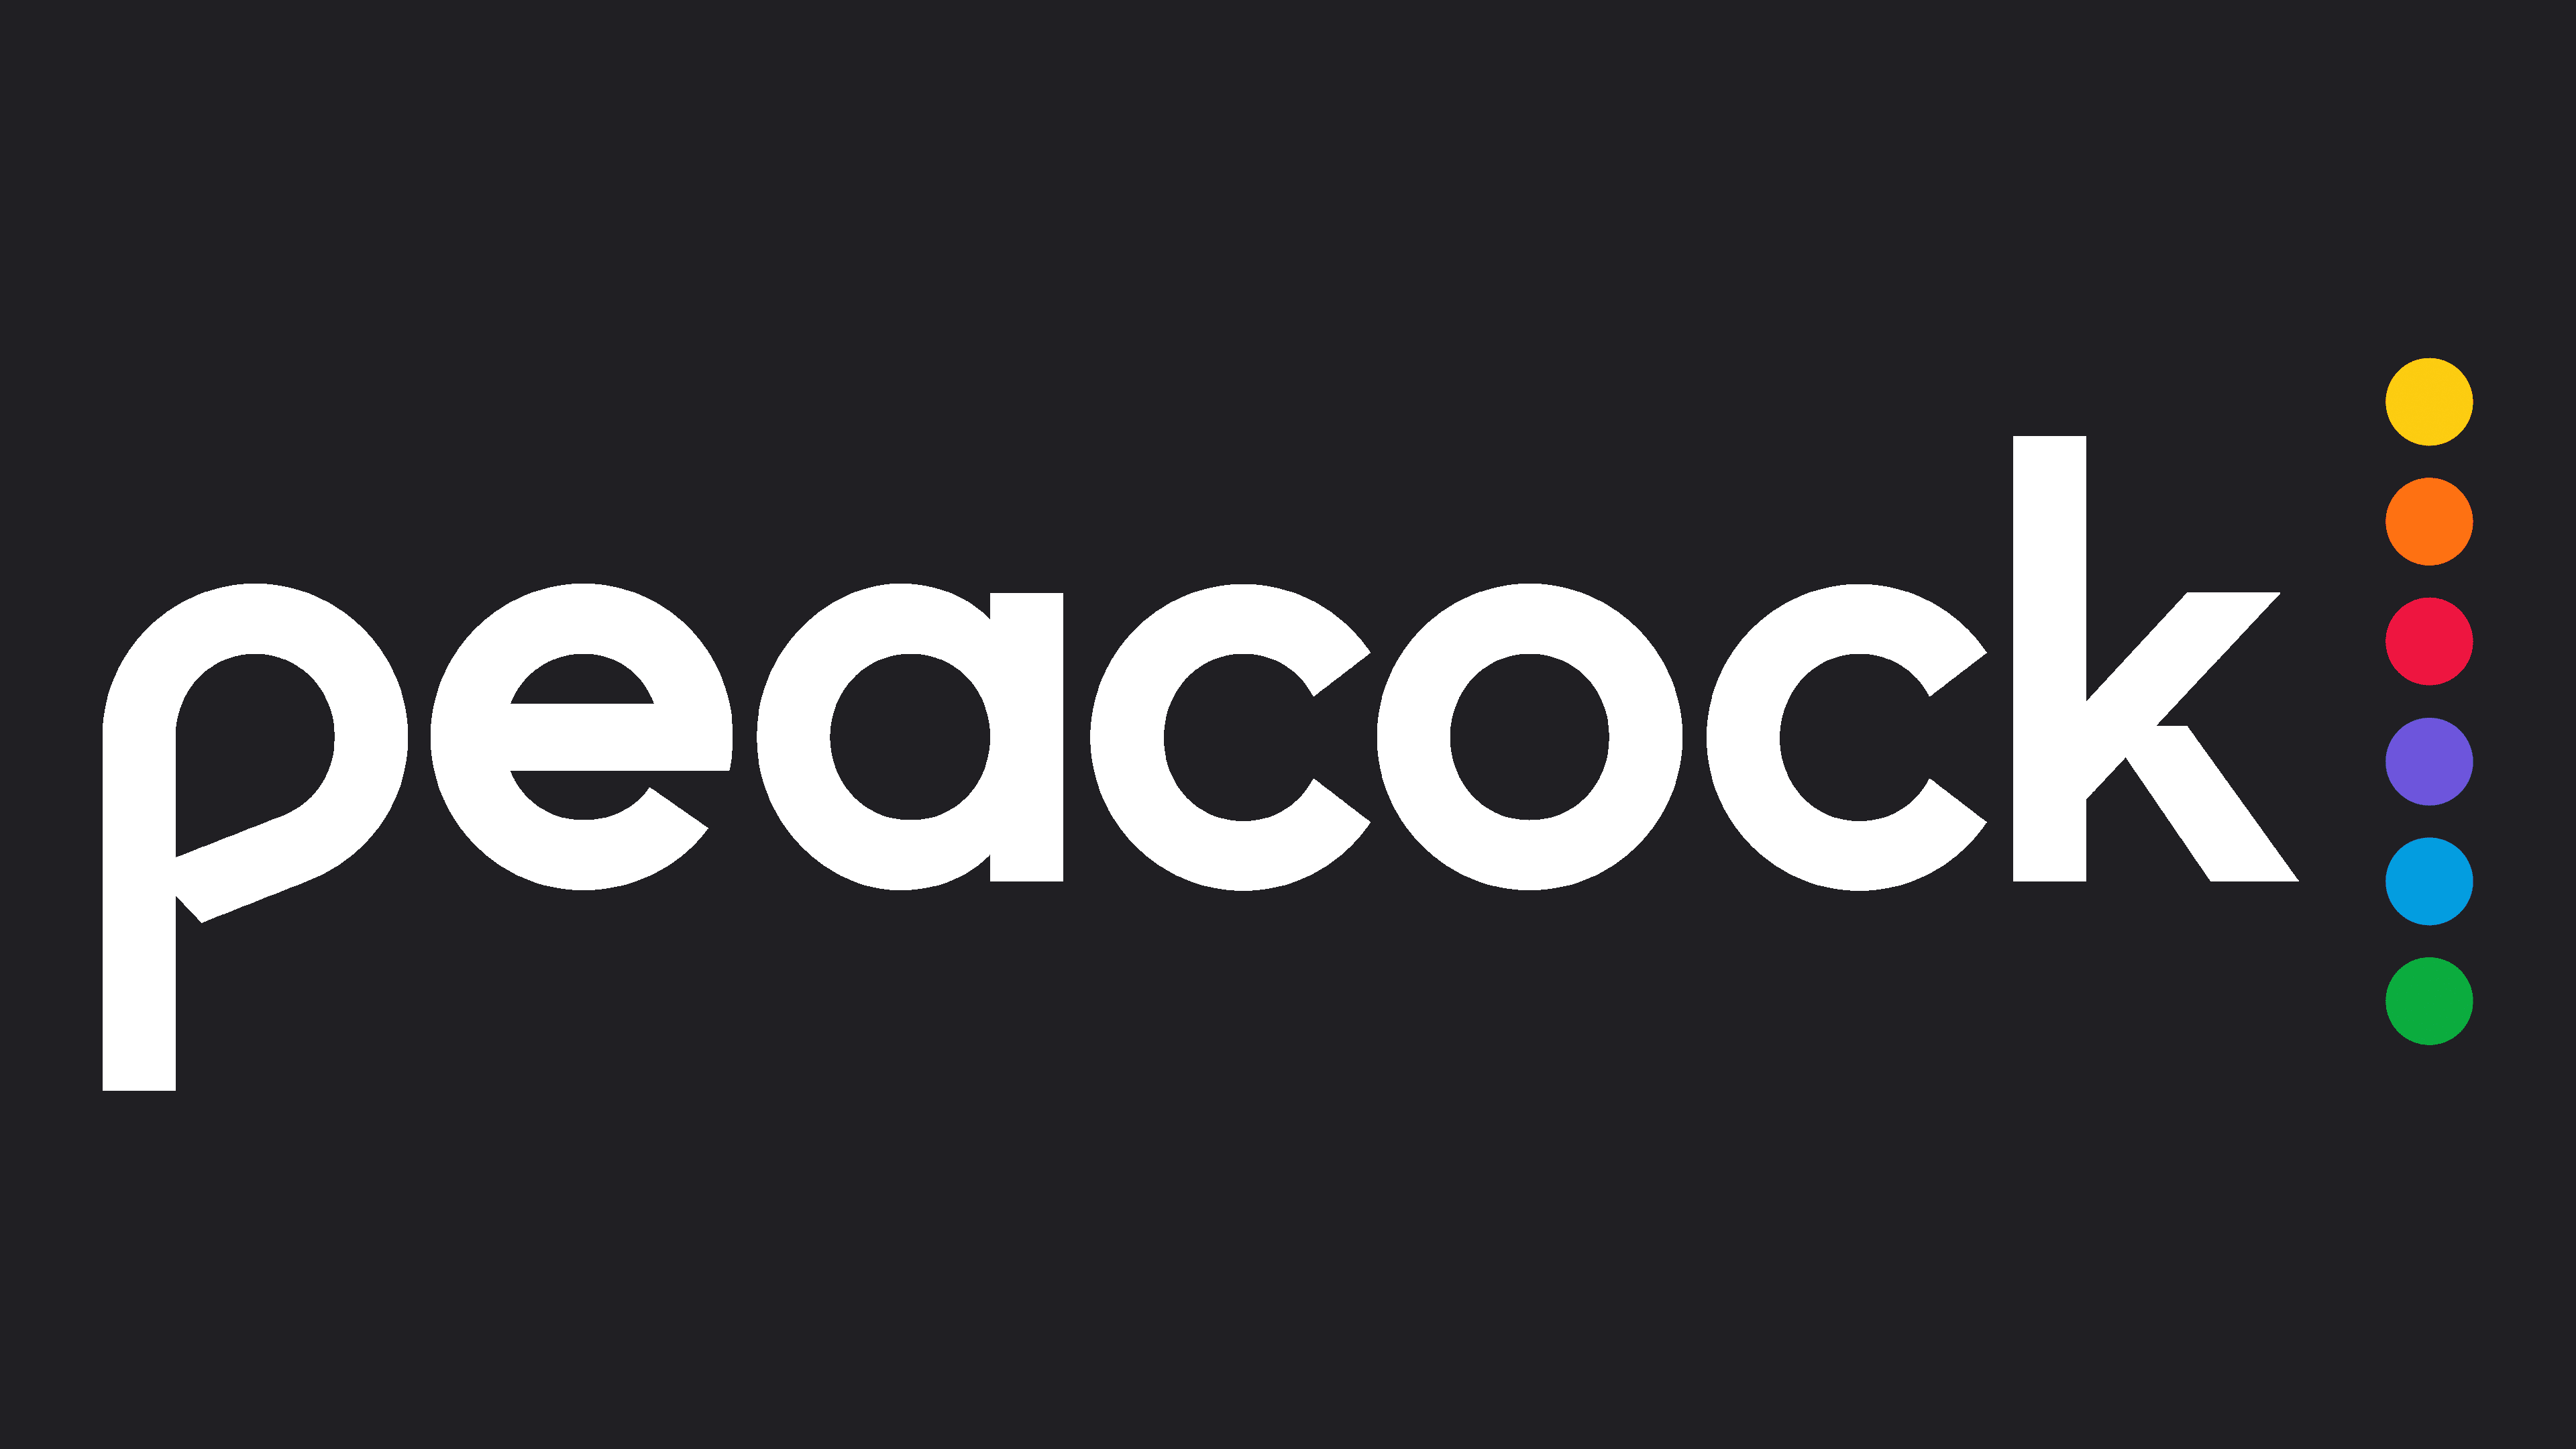 Peacocktv.com/tv – Enter Your Tv Code